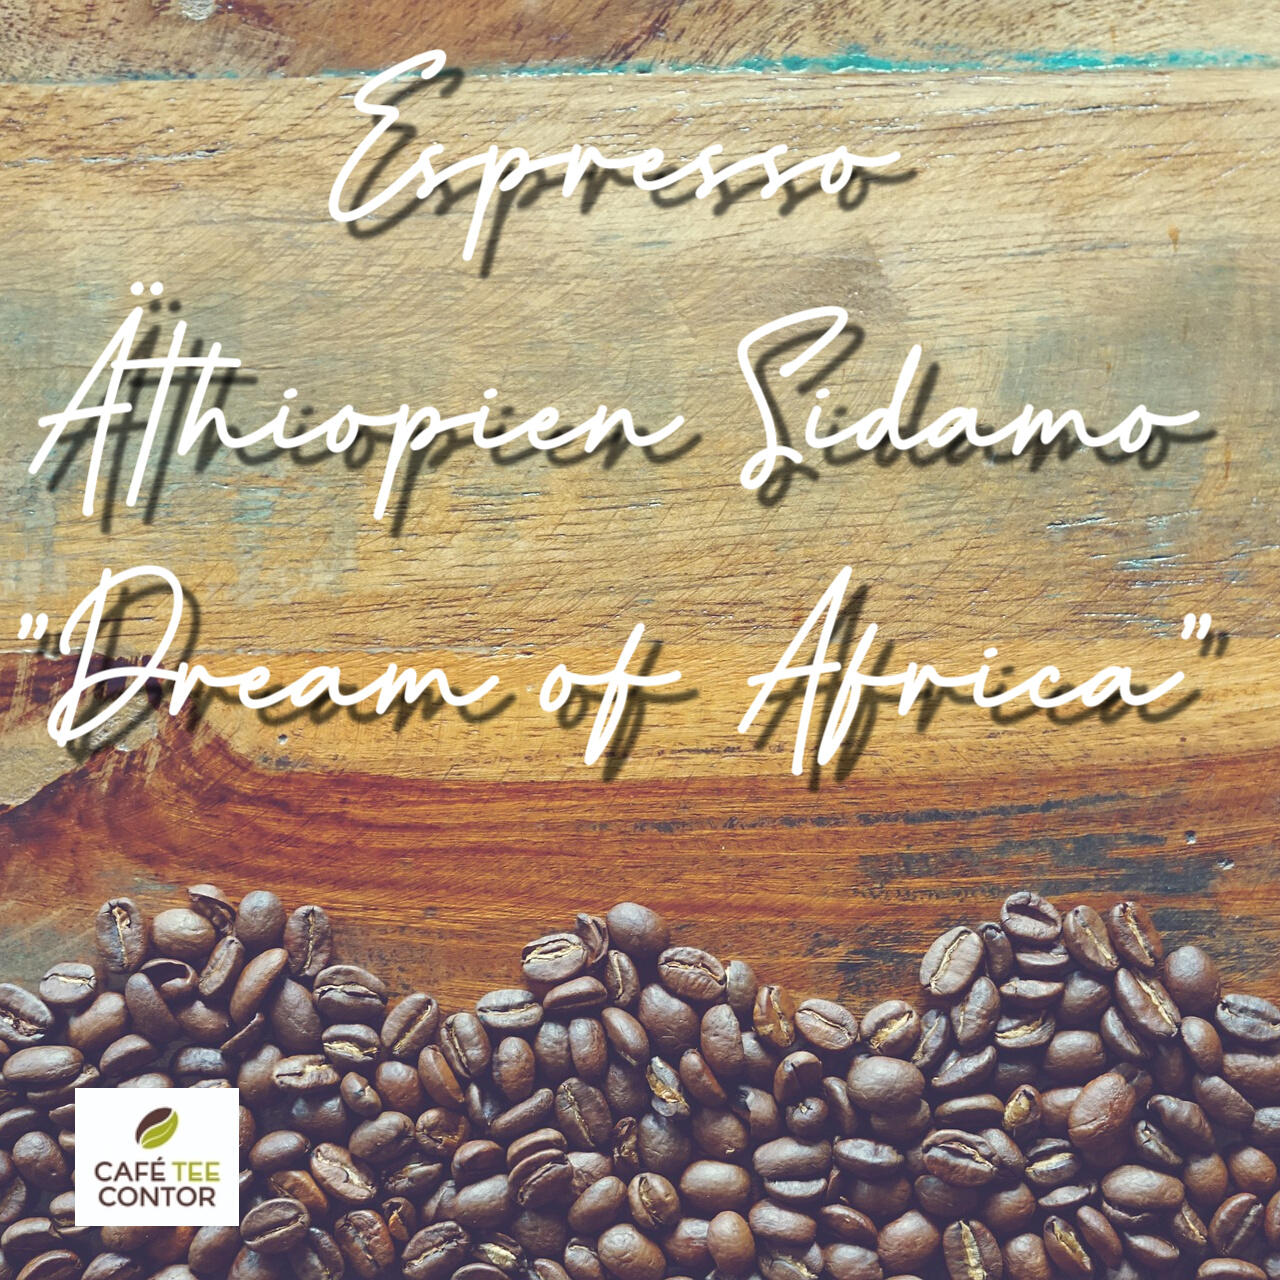 Espresso Äthiopien Sidamo